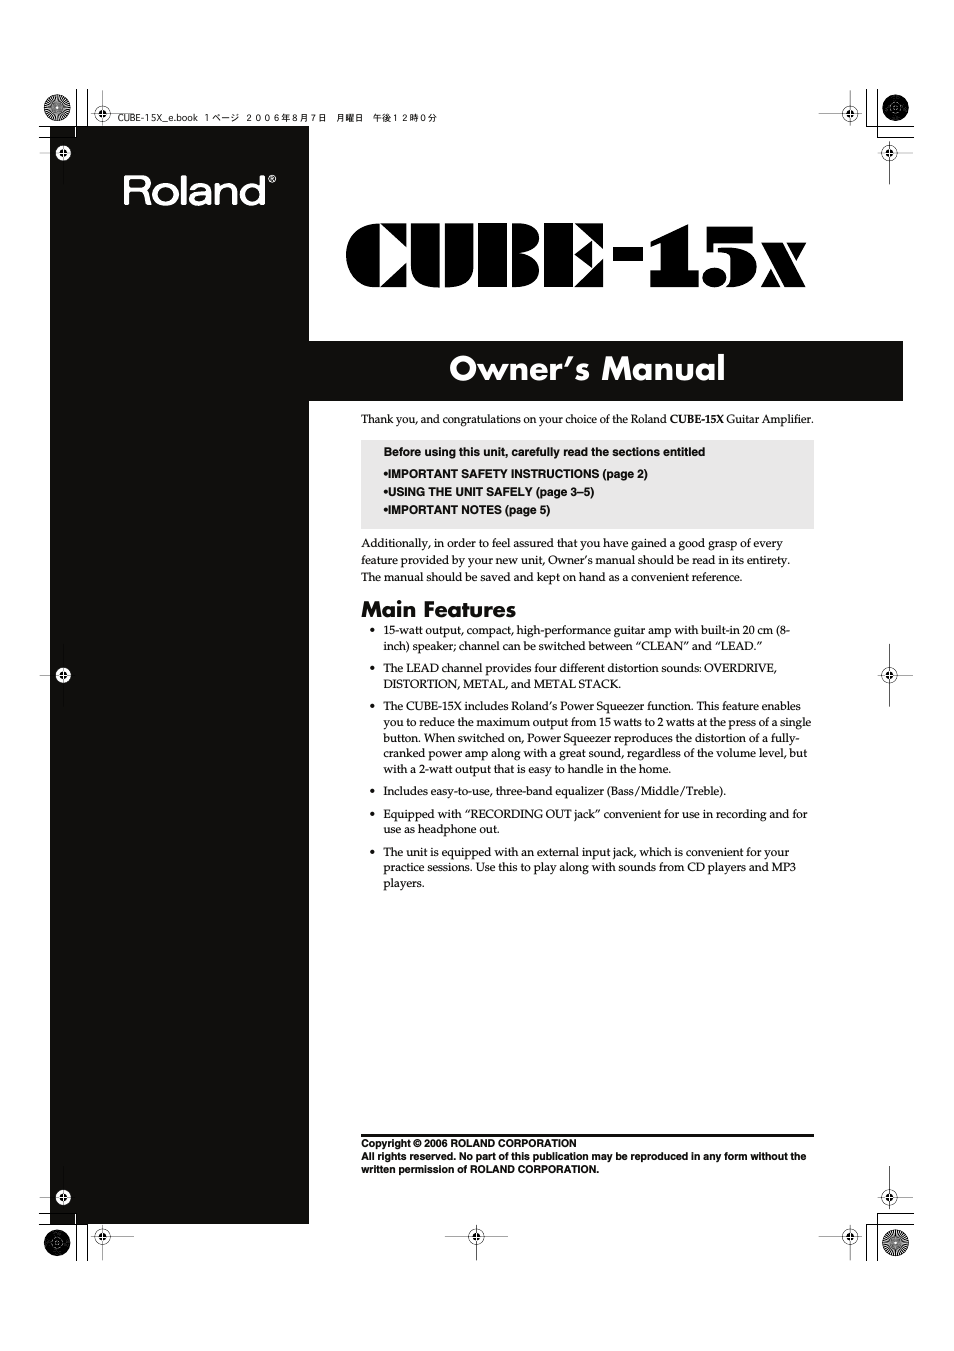 CUBE-15x